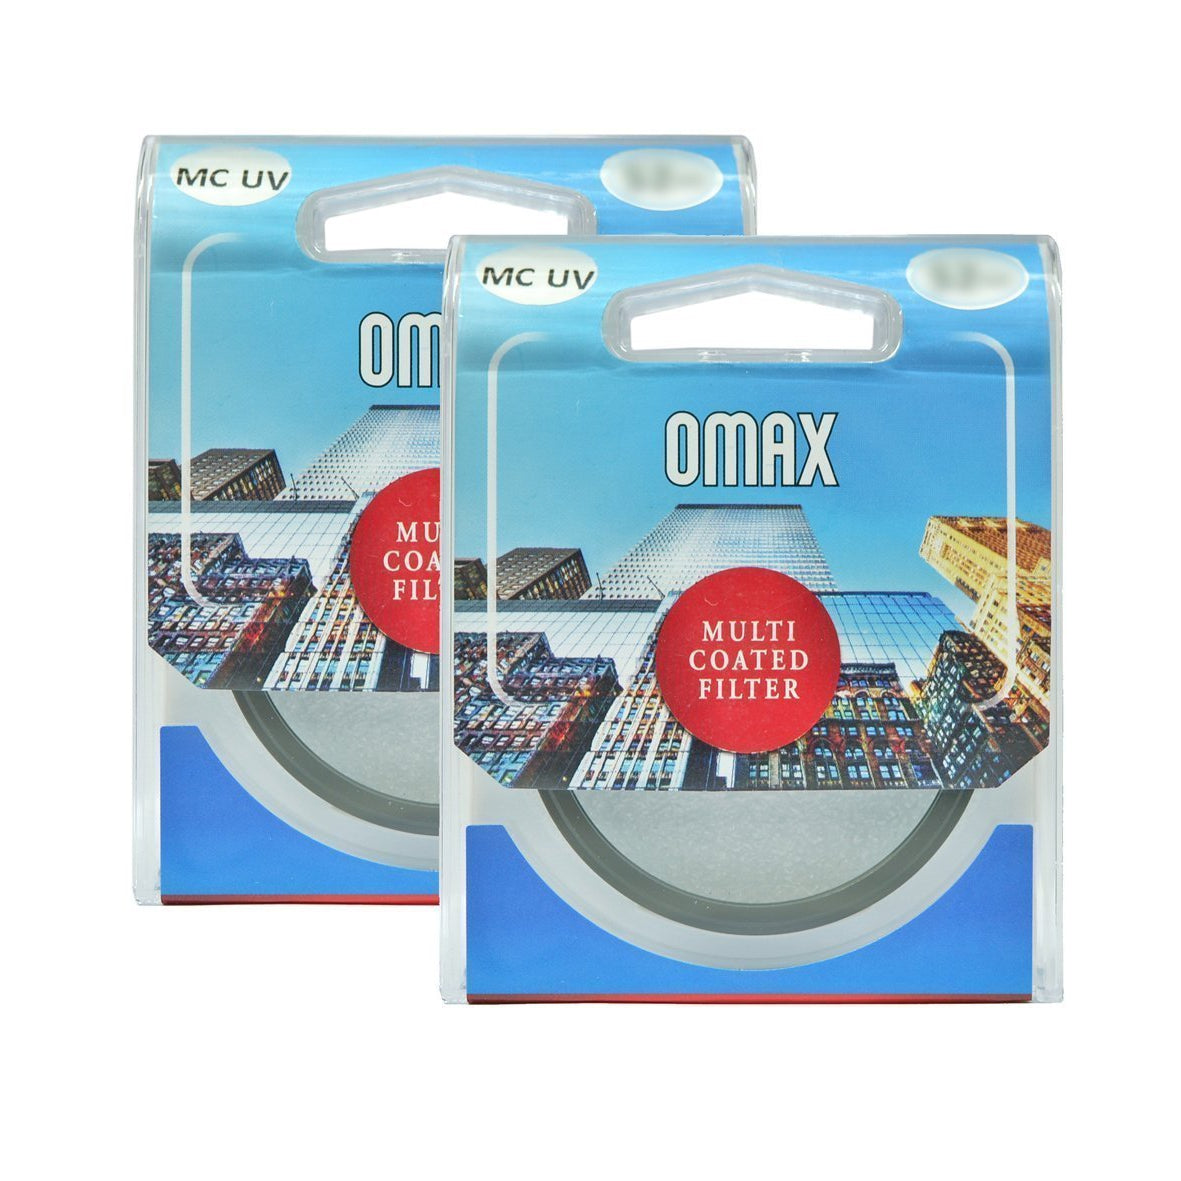 Omax mc uv Filter for Nikon D5600 af-p dx nikkor 18-55mm vr + af-p dx nikkor 70-300mm vr Lens (Set of 2 Filter) - The Camerashop